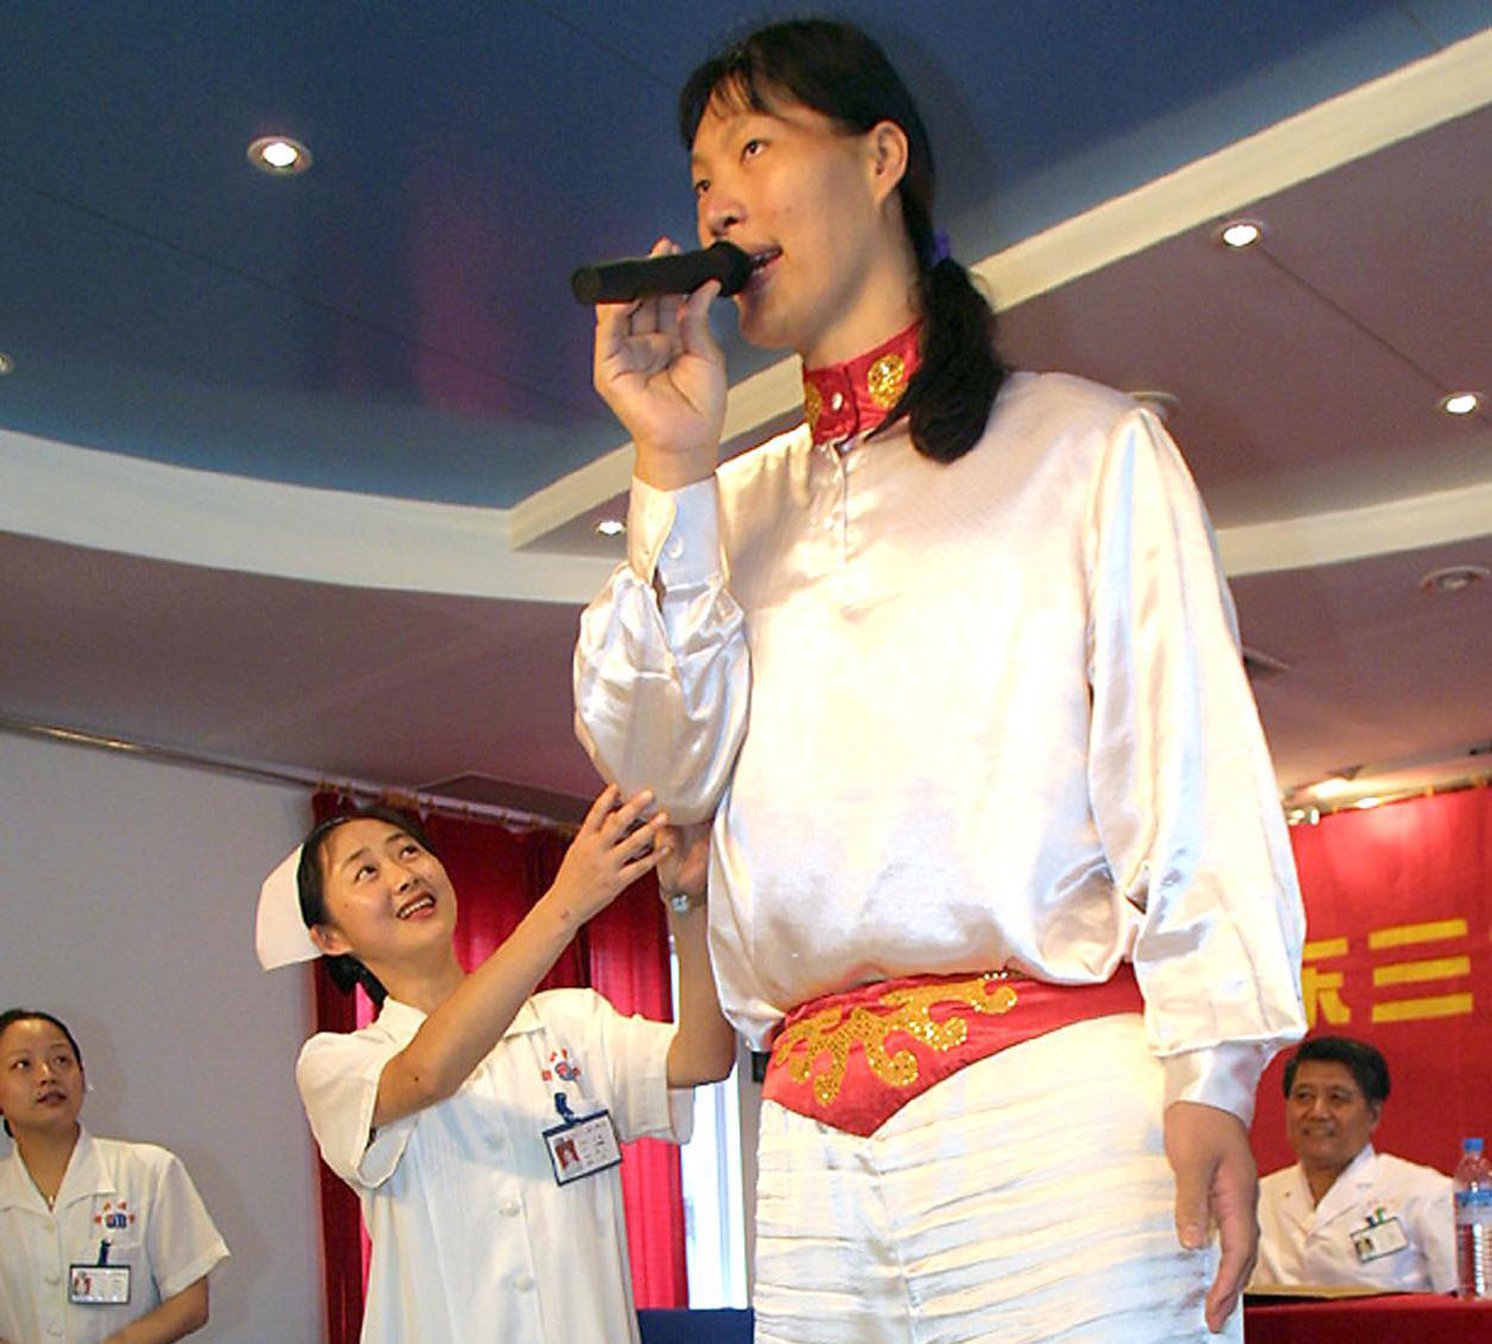 来自中国的姚德芬拥有吉尼斯世界纪录作为世界上最高女人的纪录她拥有